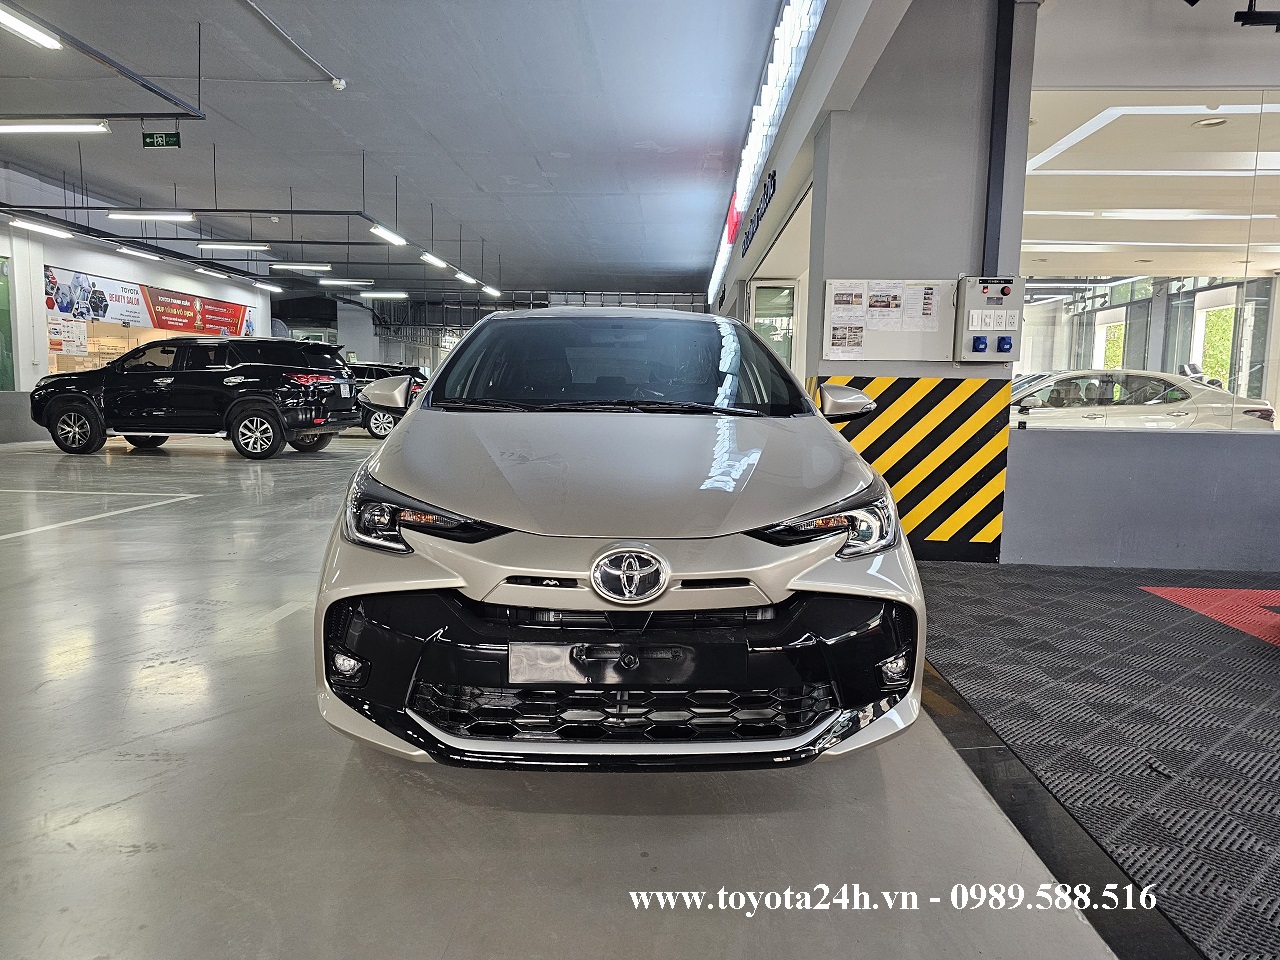 Toyota Vios 1.5E-CVT 2023 Màu Nâu Vàng Đồng, Hình ảnh bảng giá mới nhất